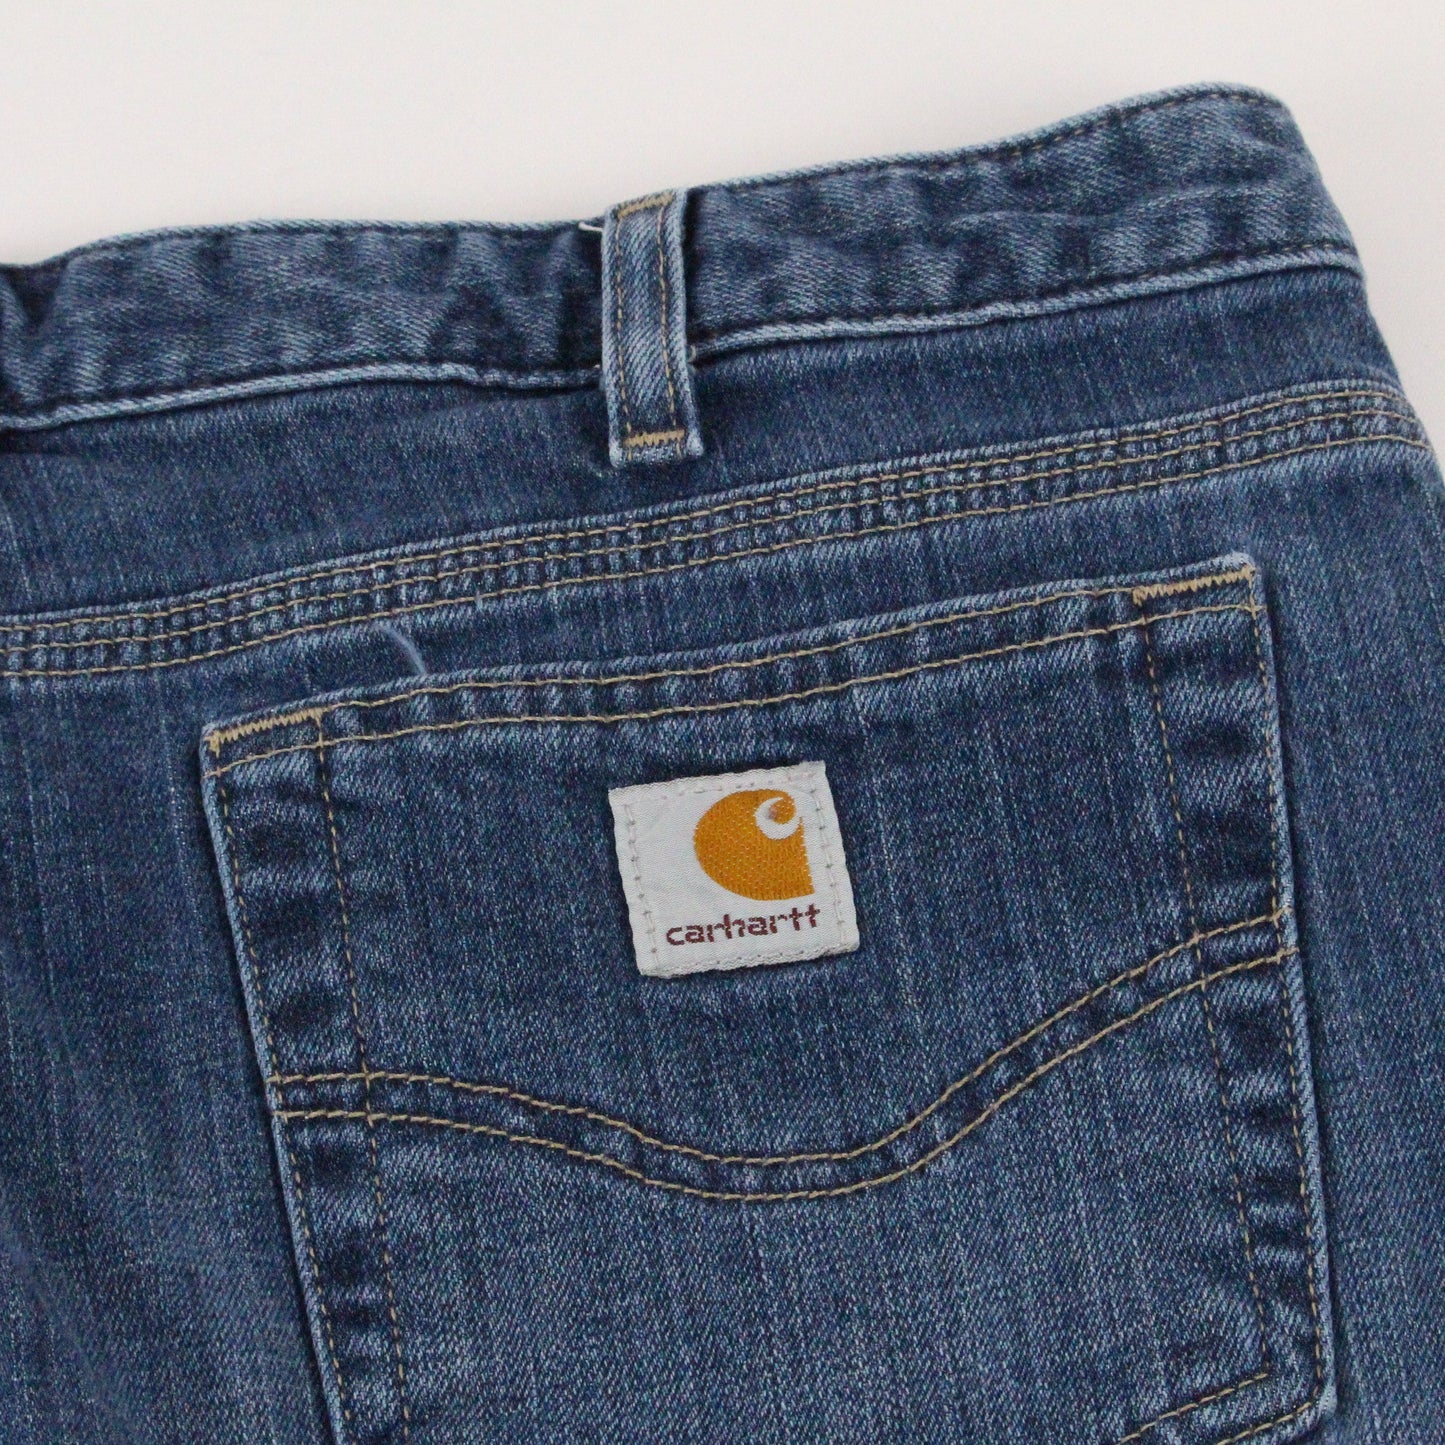 Carhartt Carhartt 1/4 Length Denim Jeans Women's Size 14